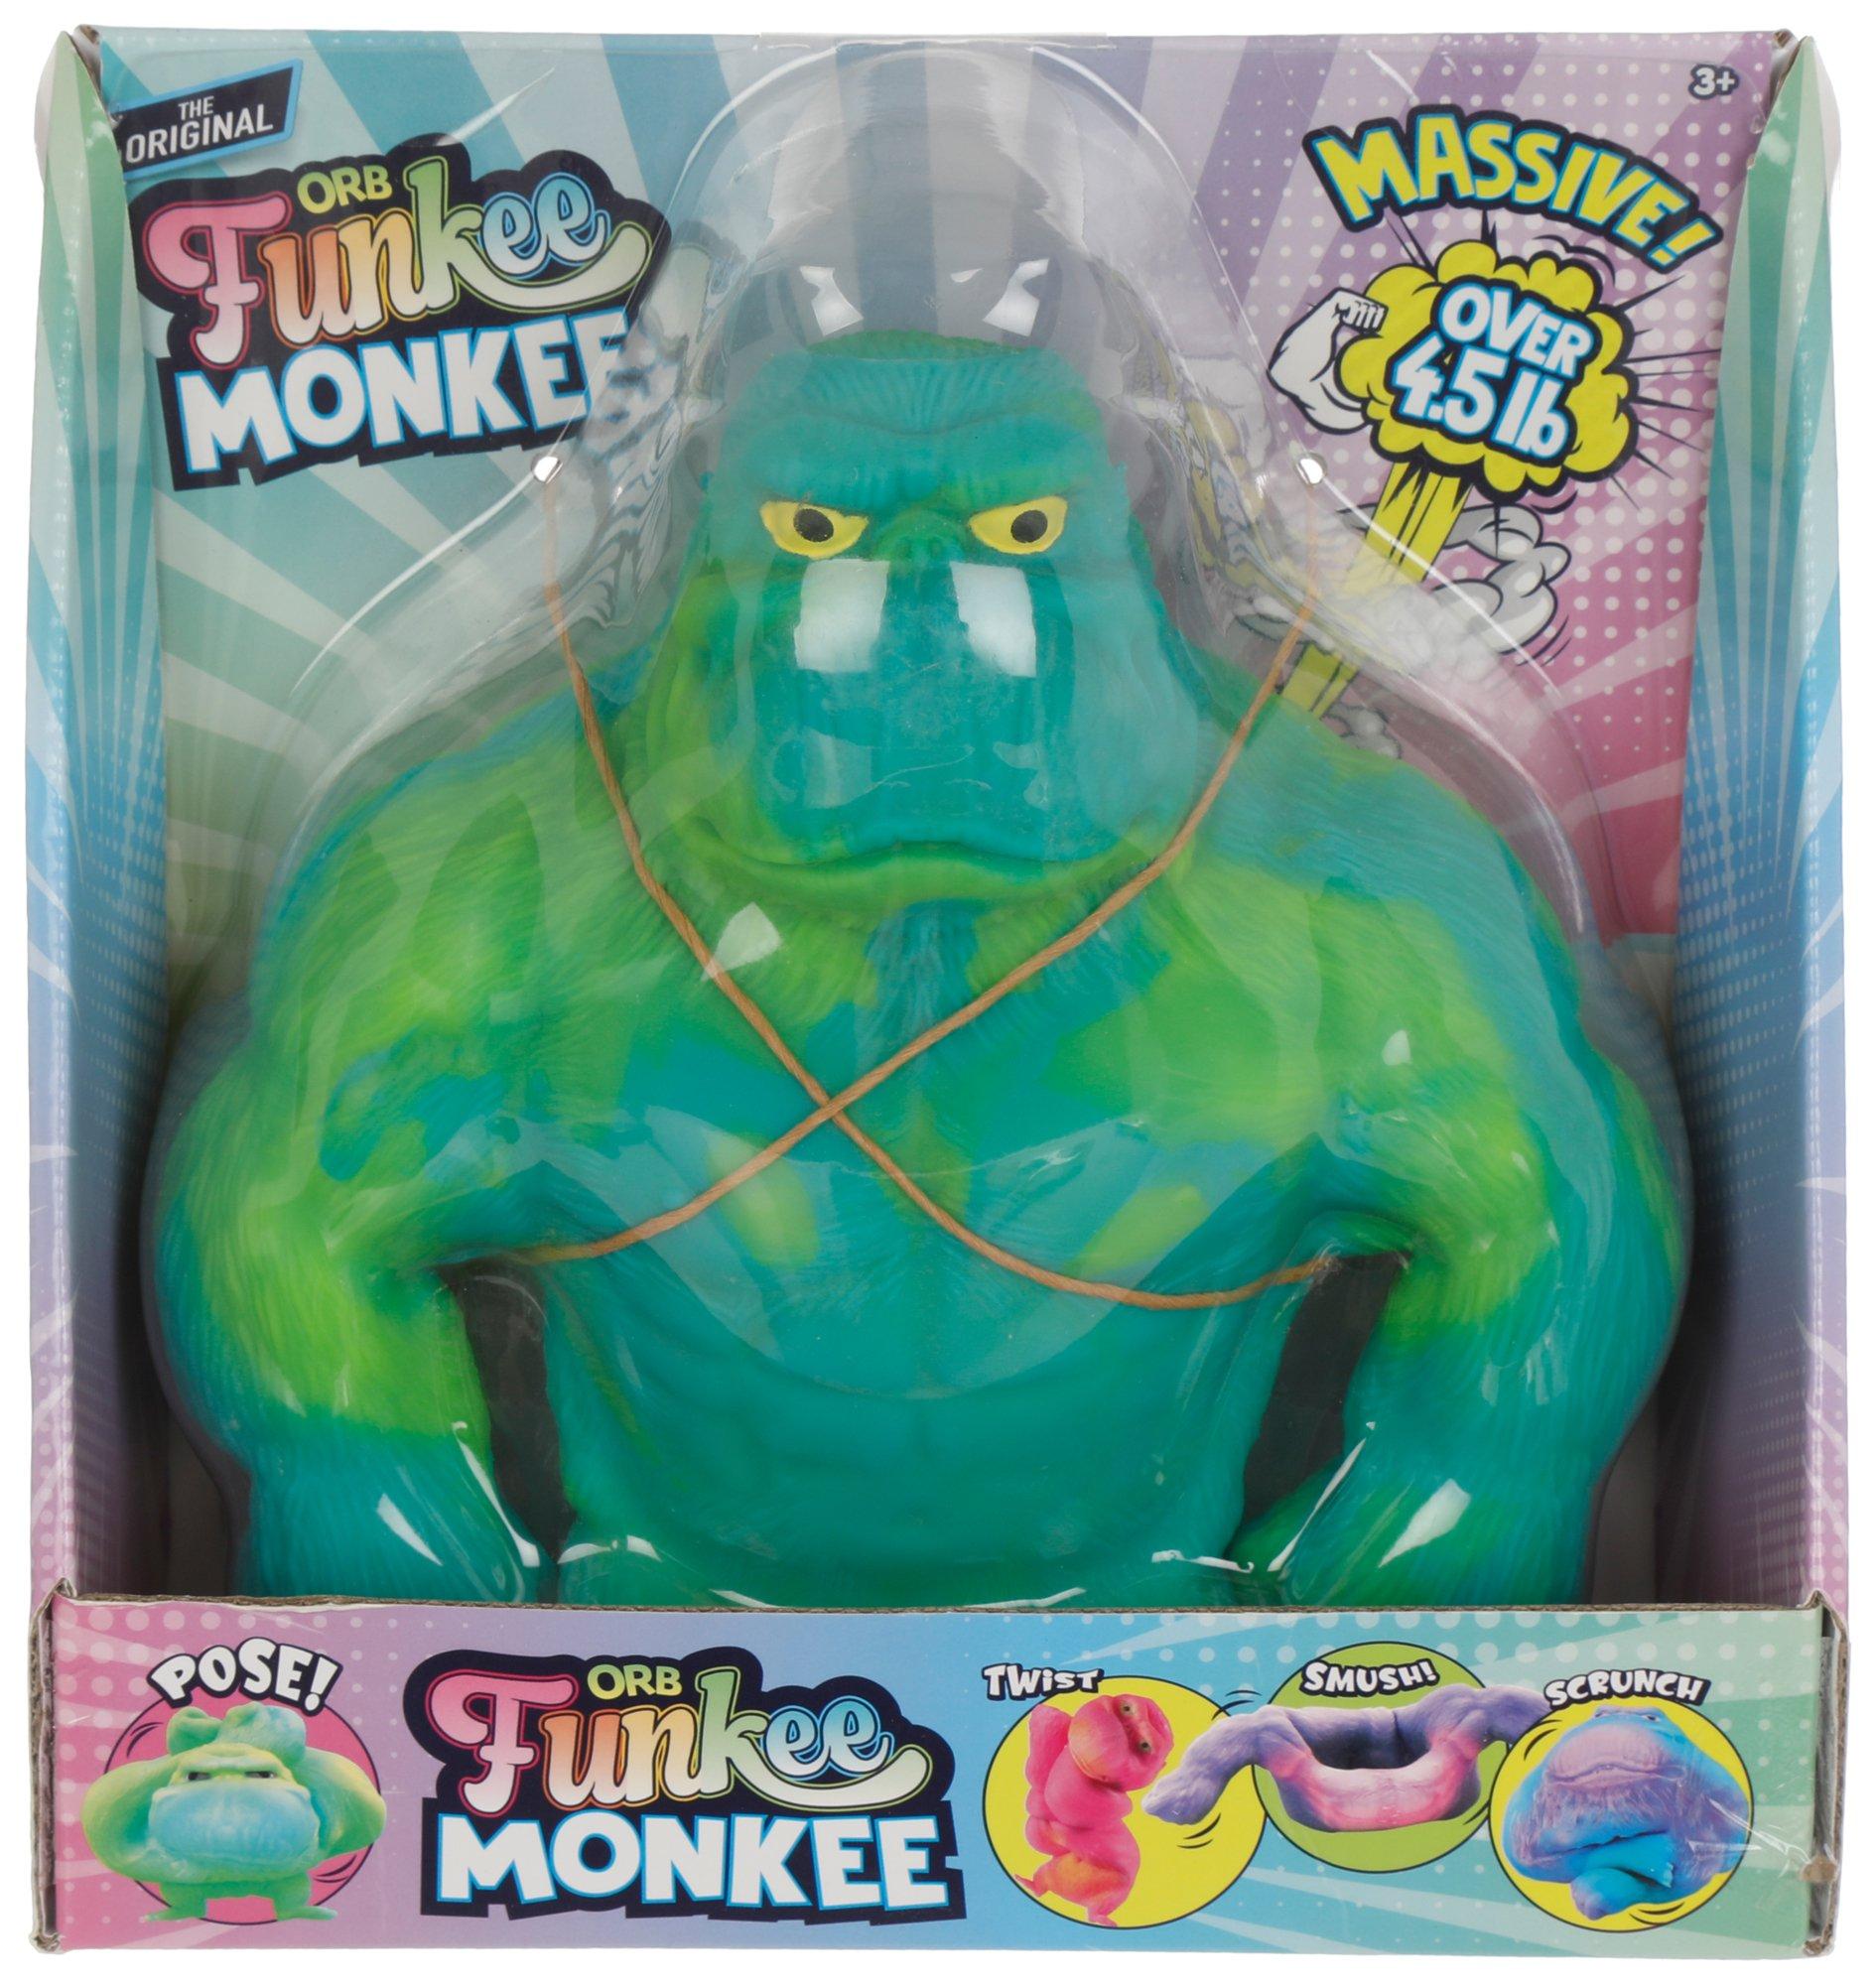 Original Funkee Monkee Toy